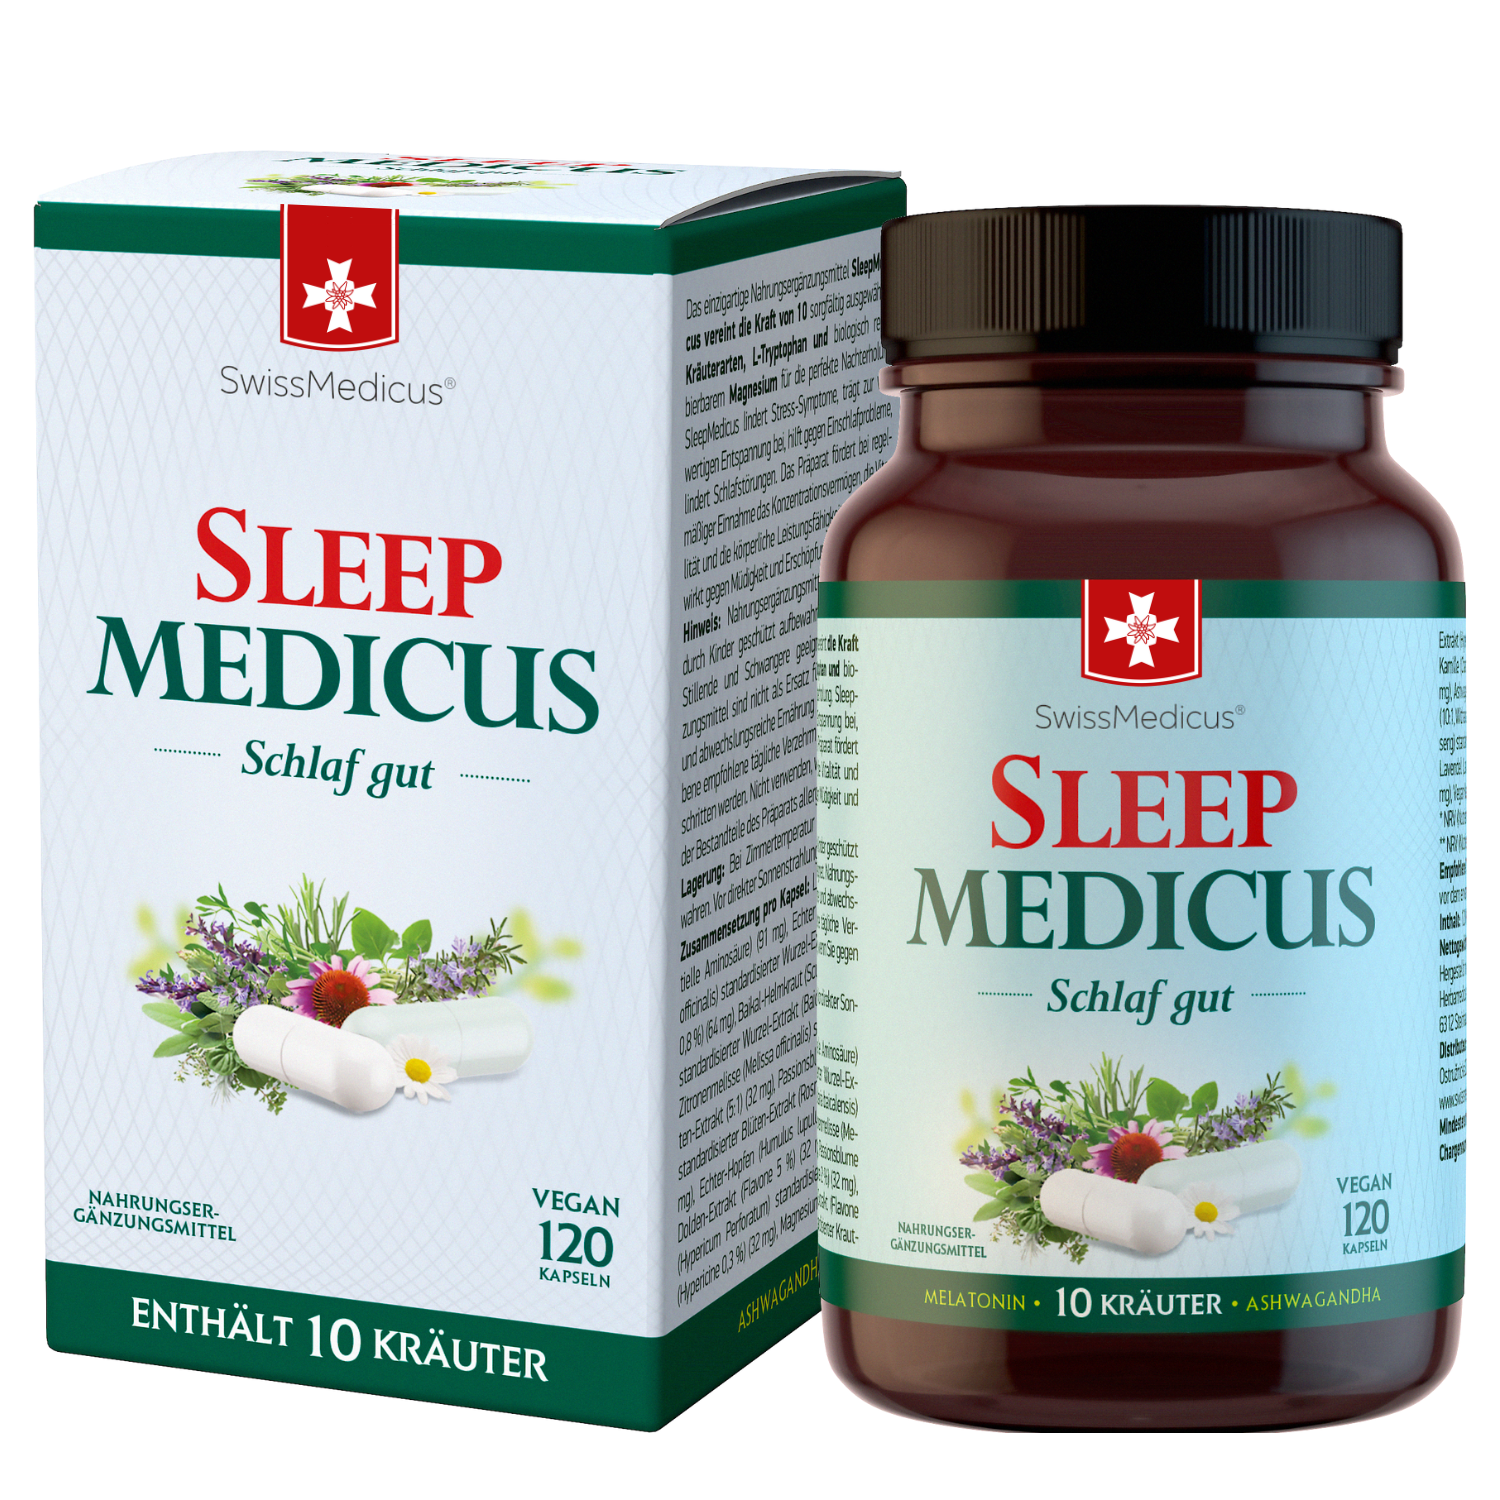 SleepMedicus 120 kapseln